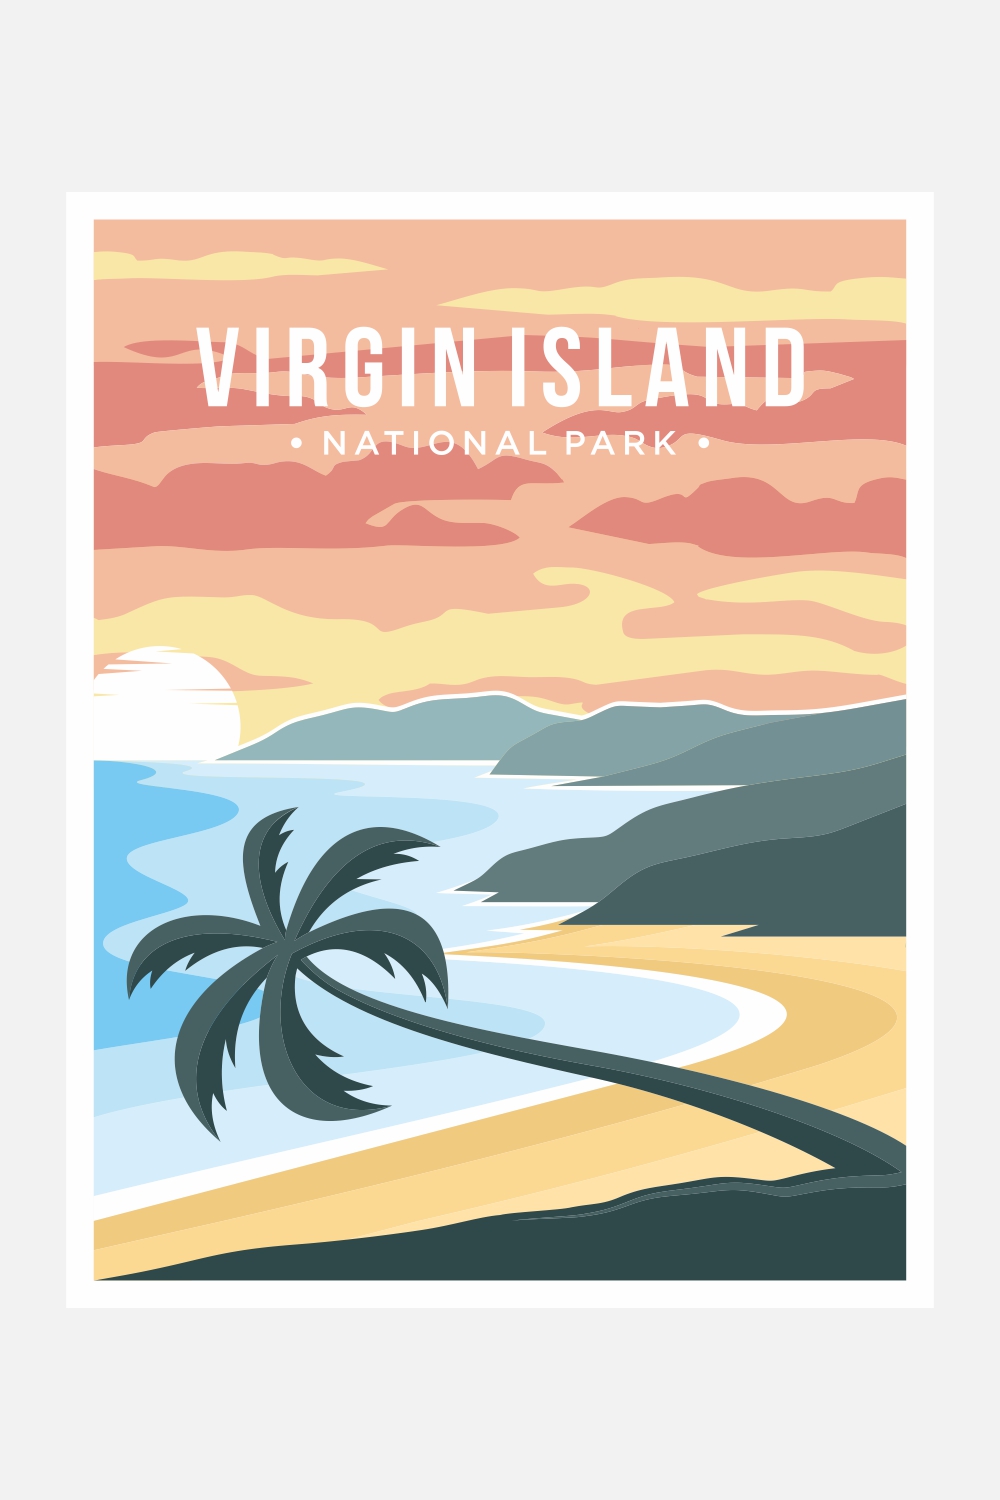 Virgin Islands National Park Poster Vector Illustration Design - Only $11 pinterest preview image.